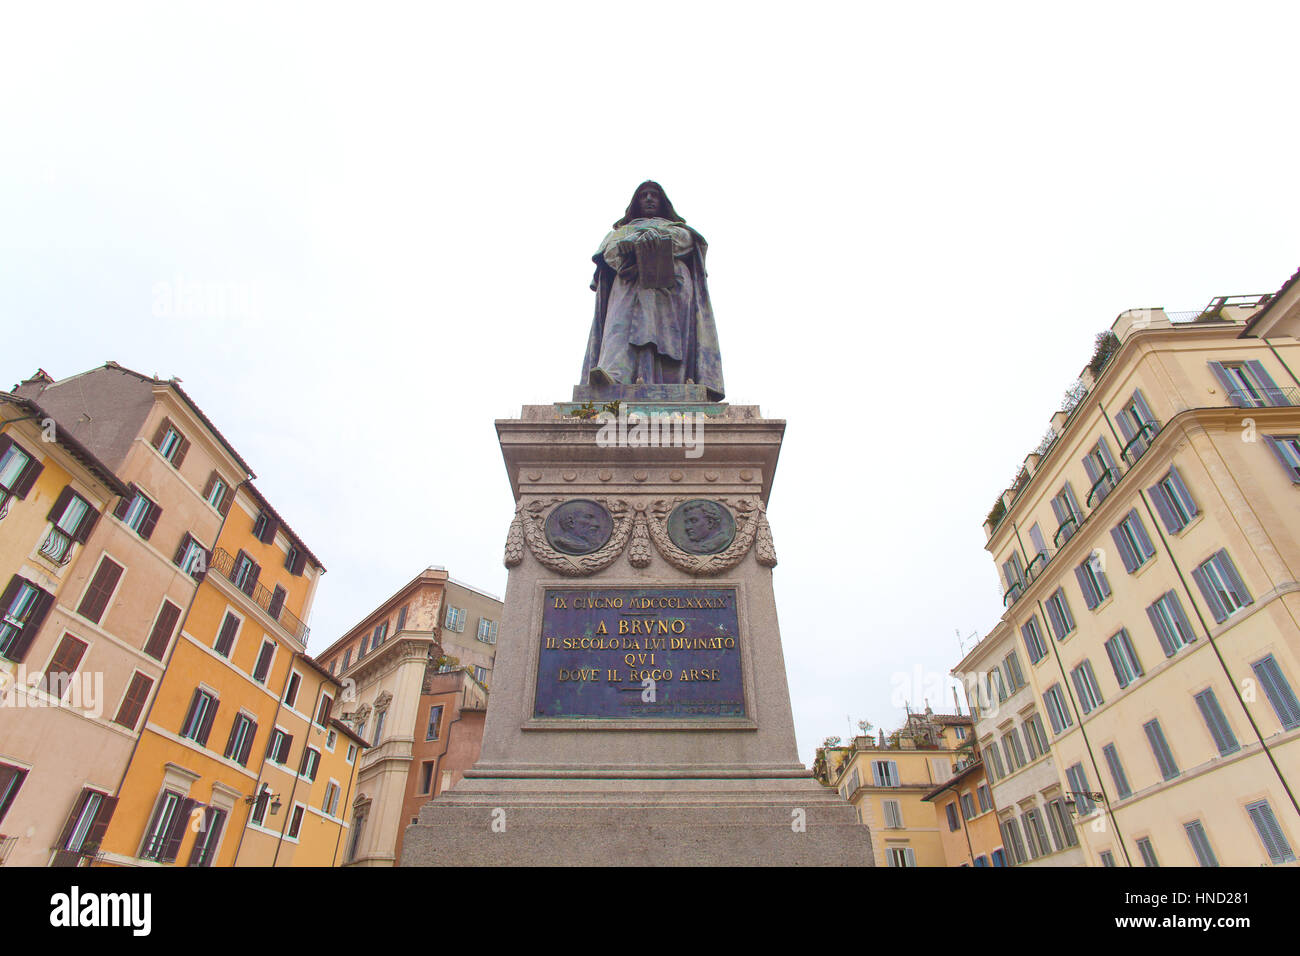 Rom, Italien - 8. Januar 2017: Giordano Brunos monumentale Statue auf der Piazza Campo De Fiori, Rom. Das Denkmal wurde im Jahre 1889 Langschläferin errichtet wo er war Stockfoto